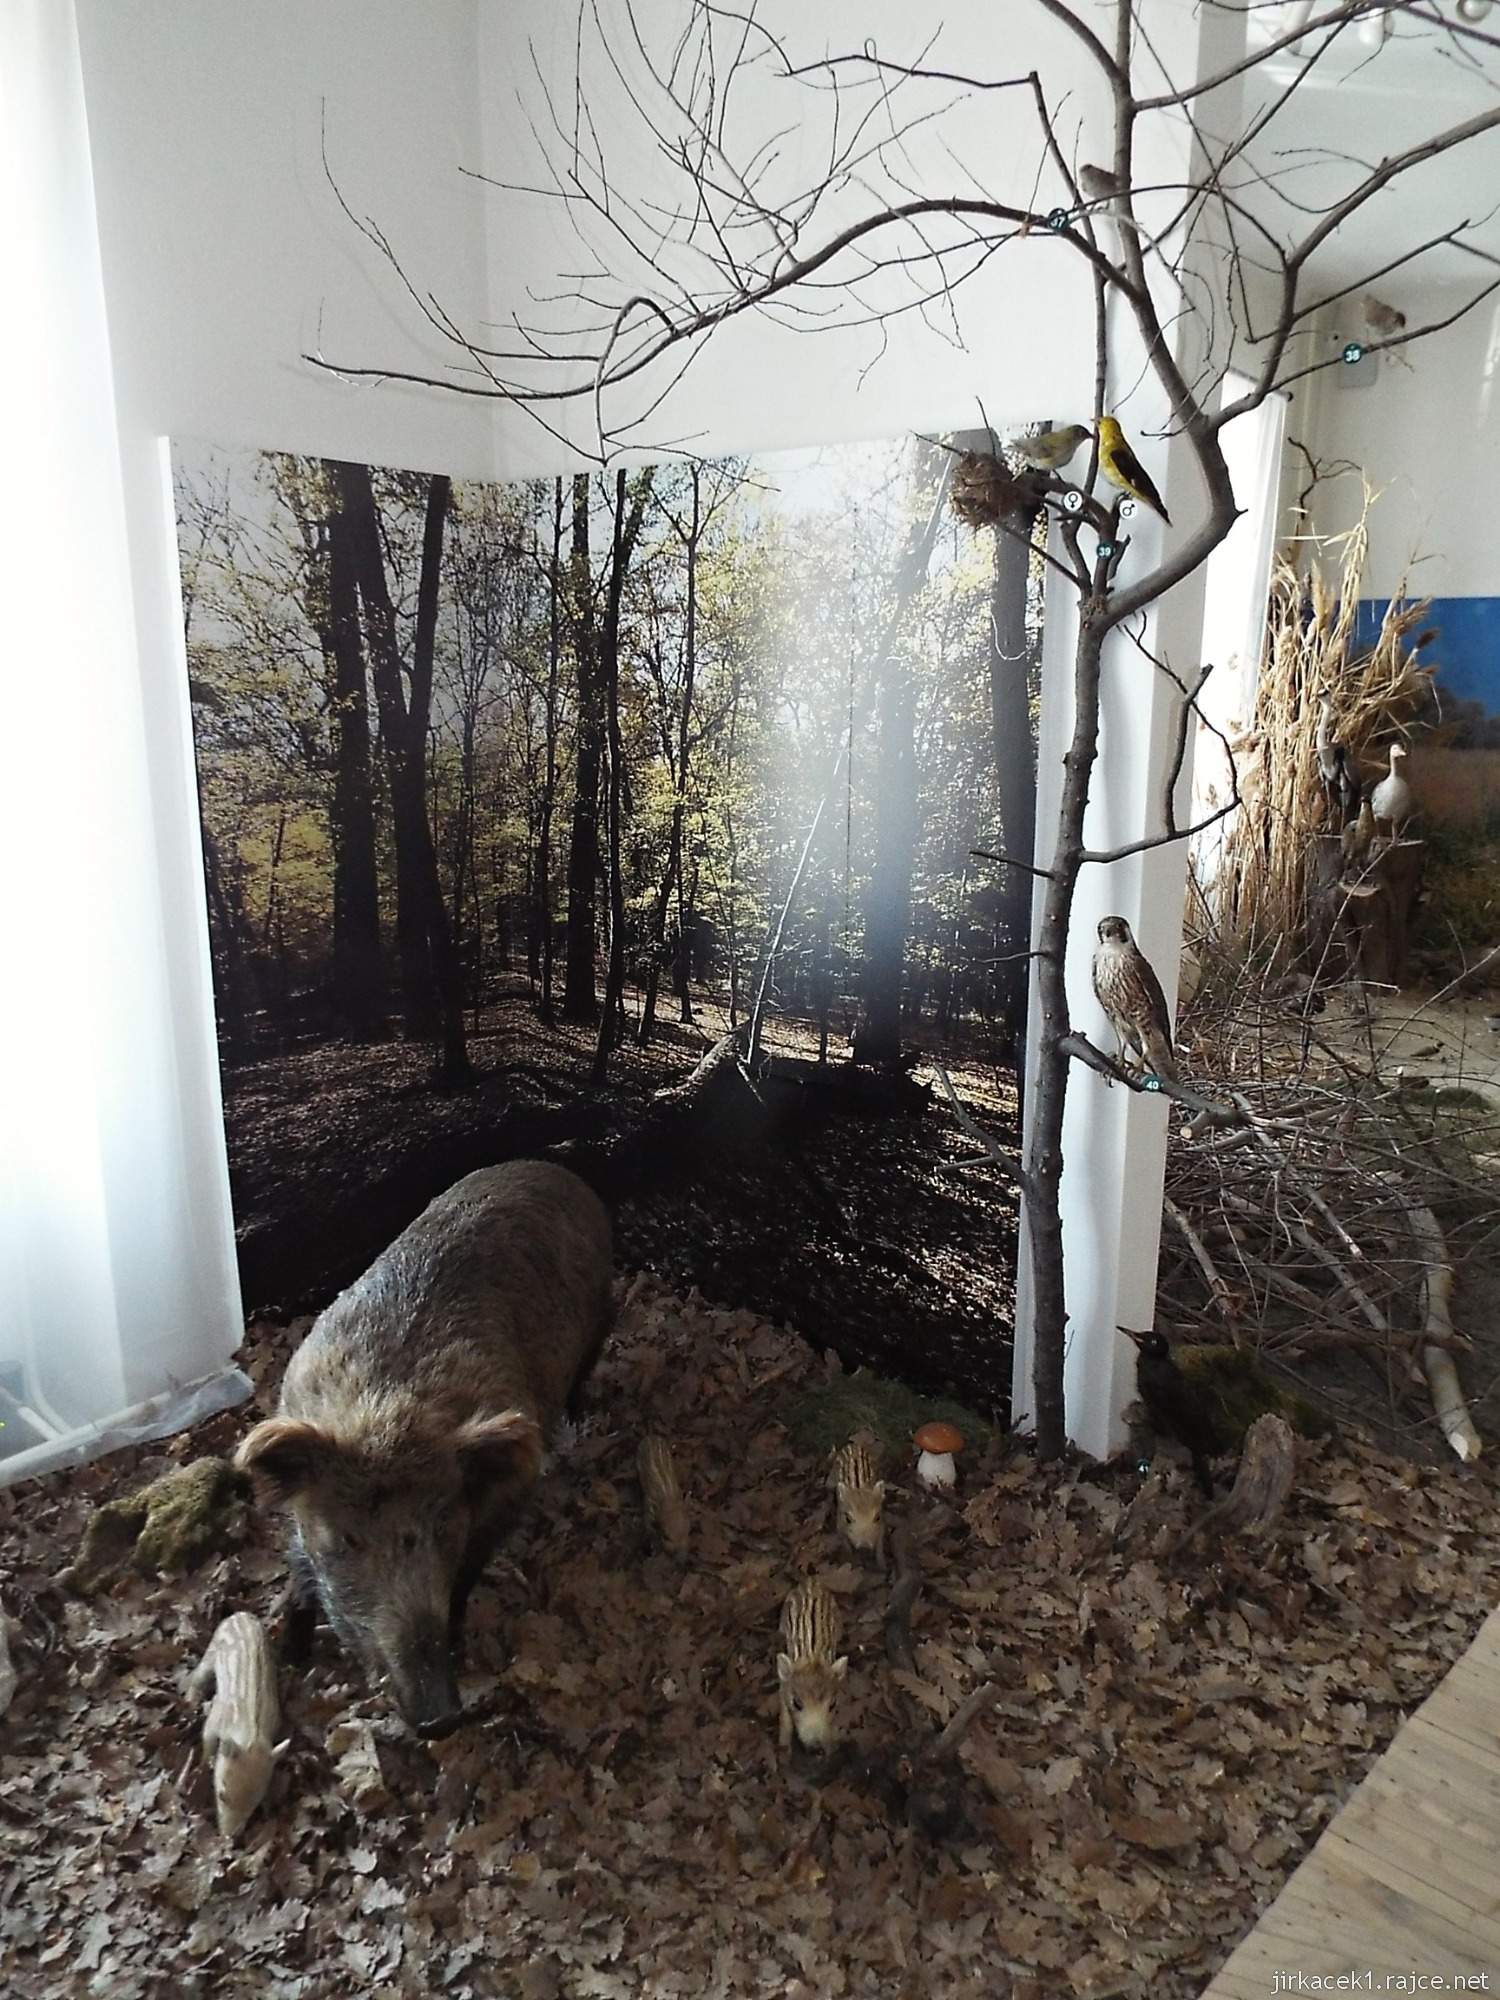 Valtice - zemědělské muzeum 14 - expozice přírody